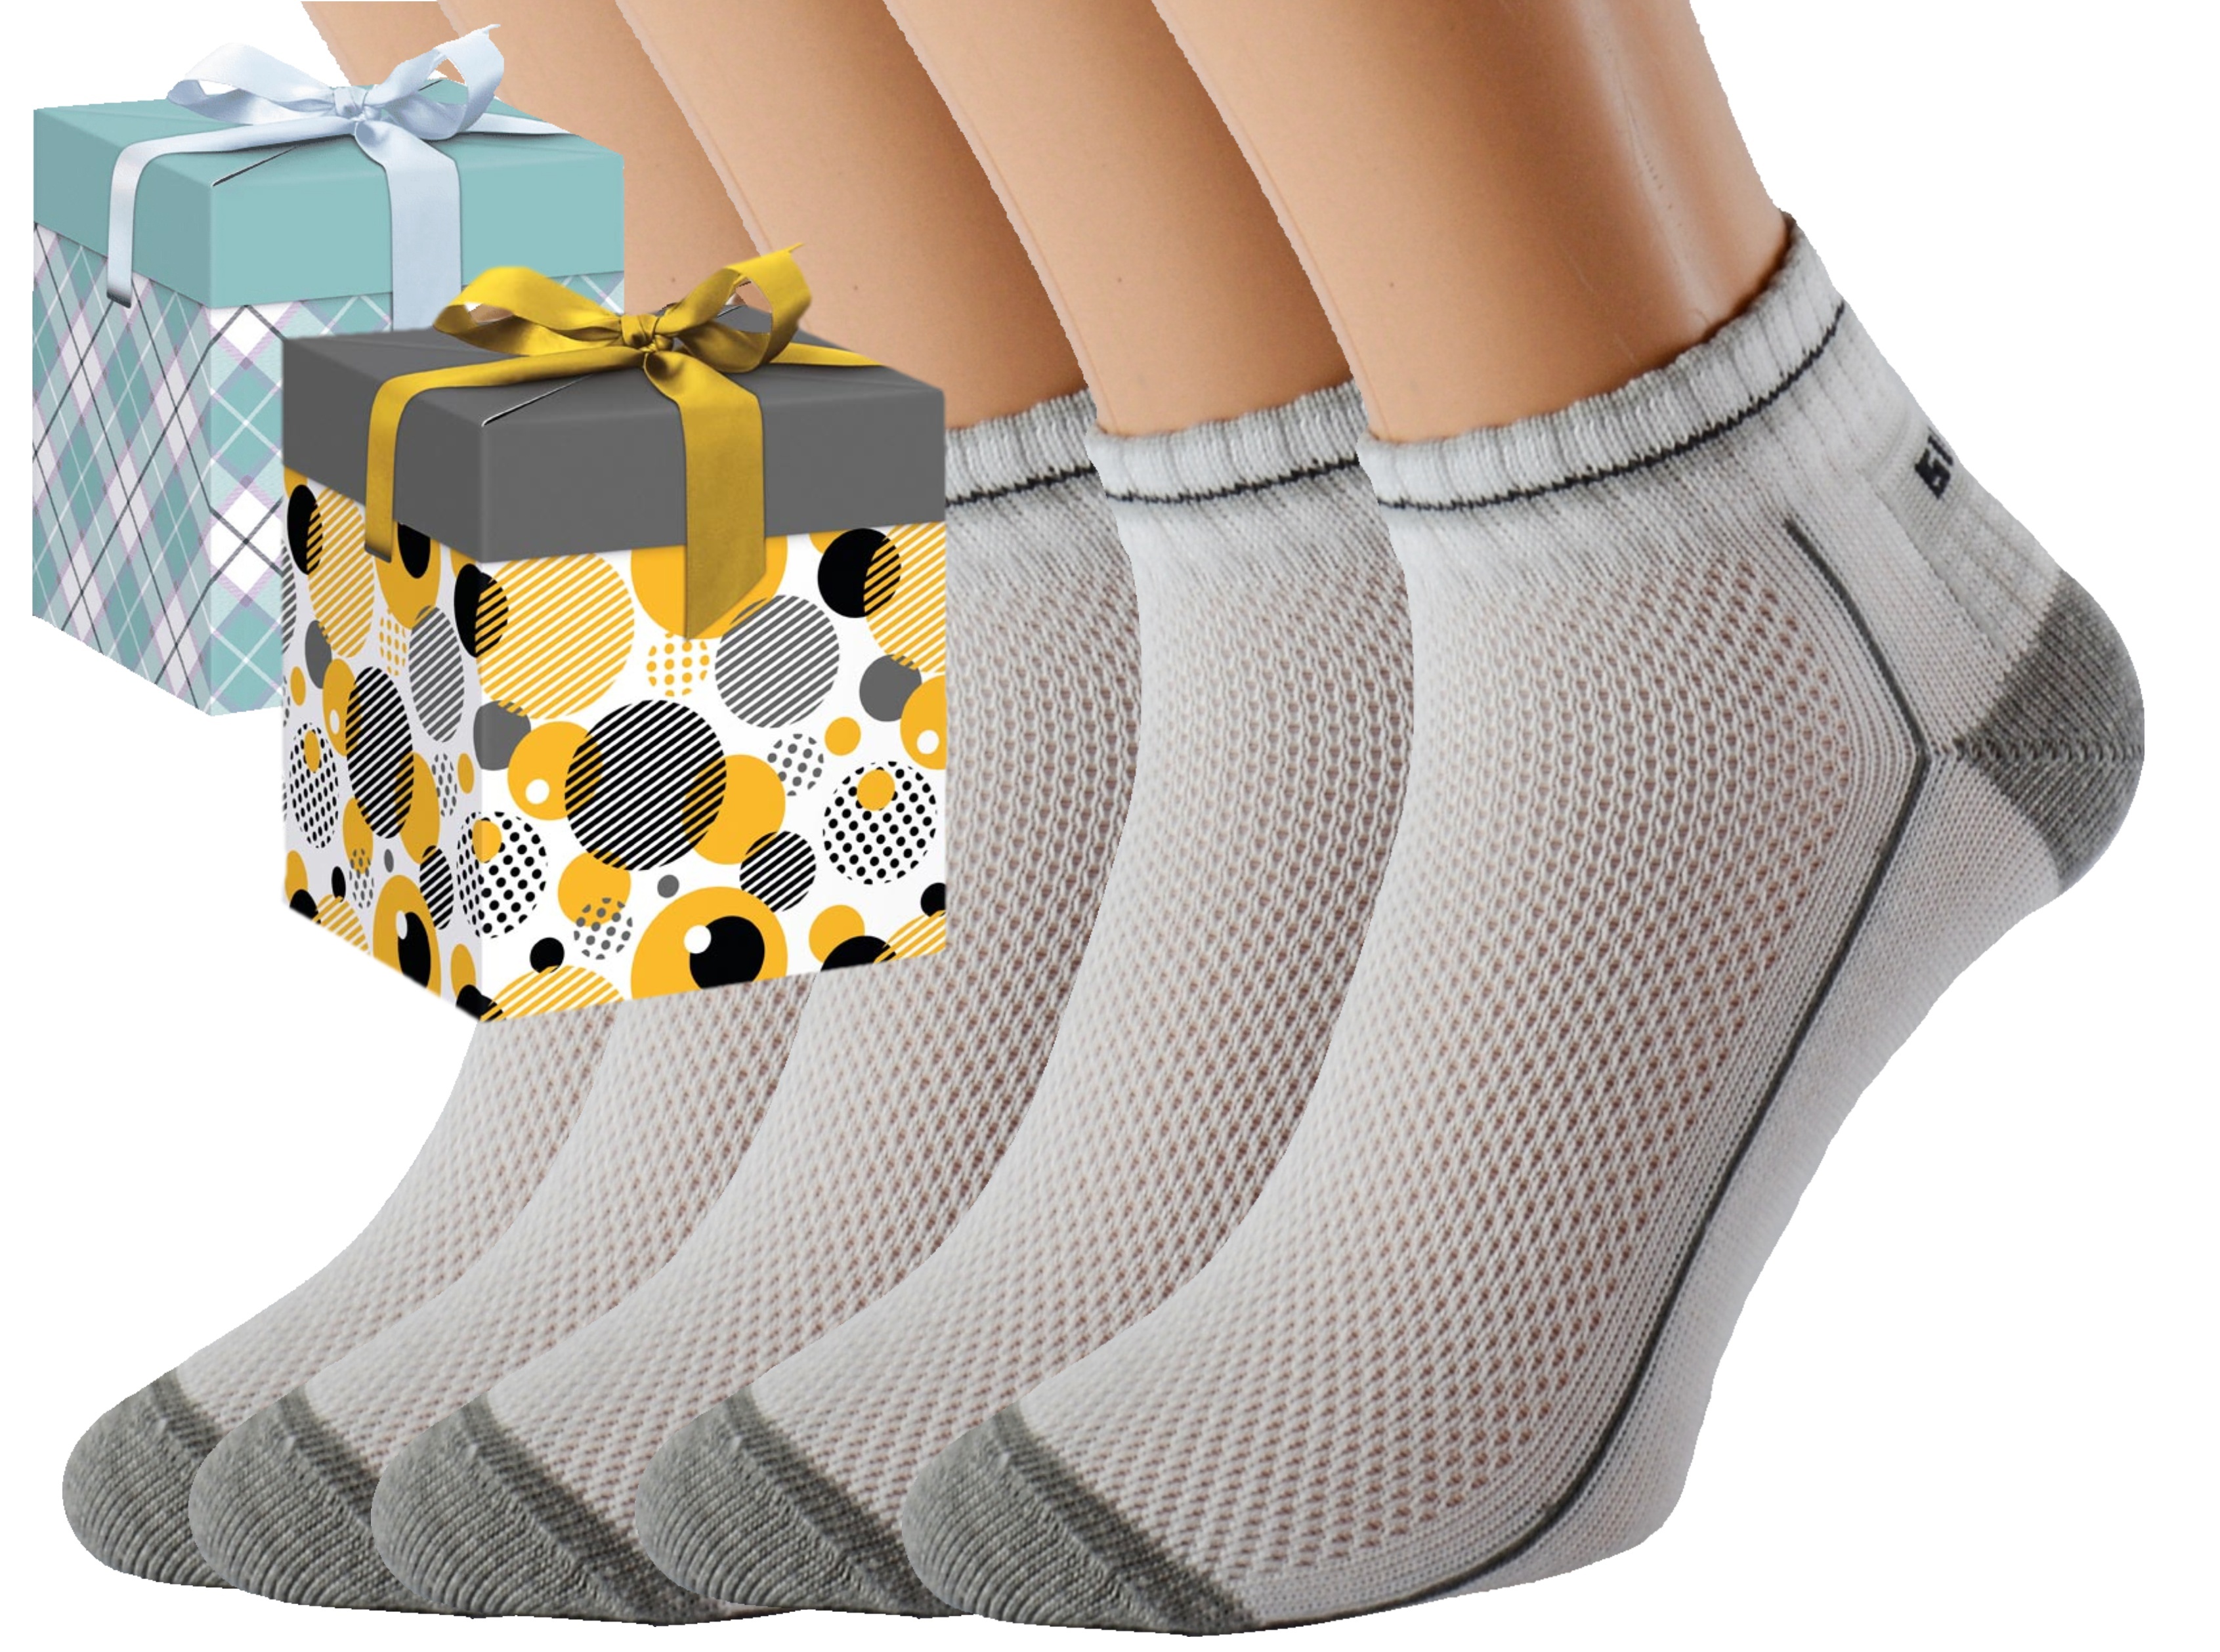 Dárkové balení 5 párů zdravotních ponožek EMIL Barva: Bílé, Velikost: EUR 36-38 (UK 4-5), Zvolte variantu dárkového balení: Mint kostkovaná